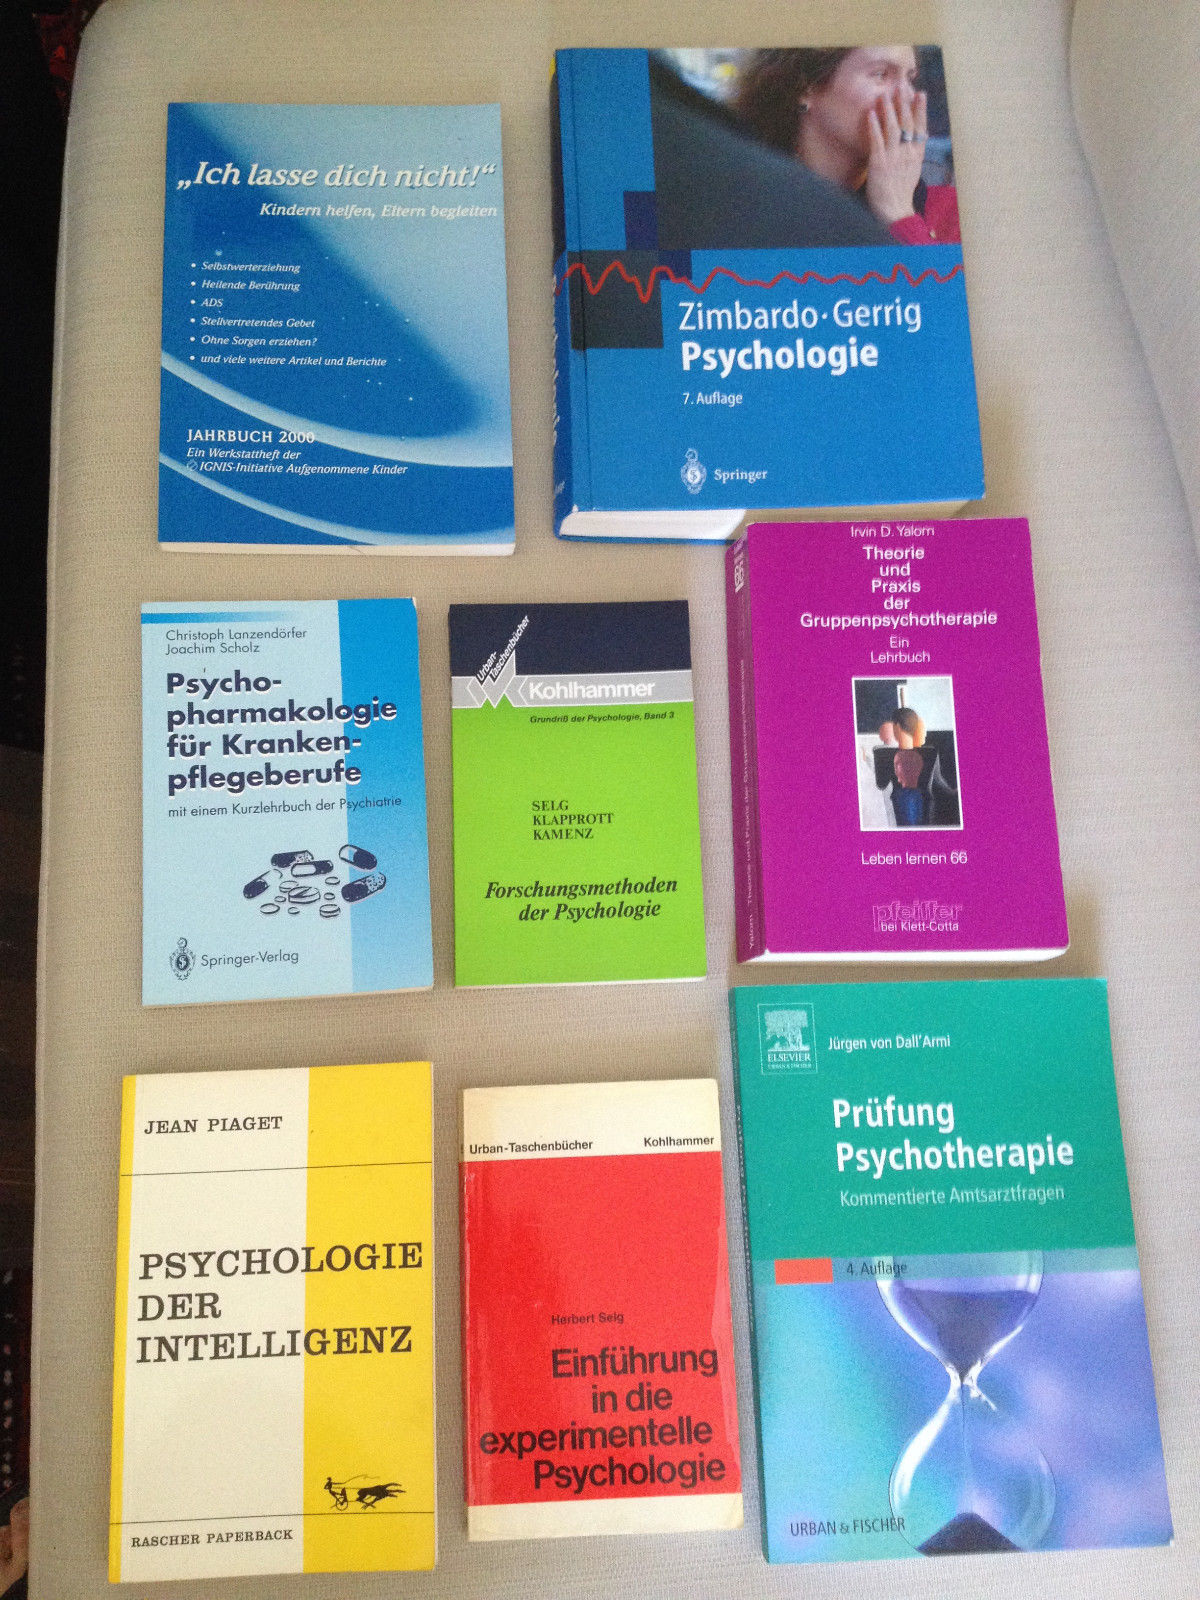 Zimbardo Gerrig Psychologie + weitere 7 Fachbücher - teilw. Markierungen/Notizen